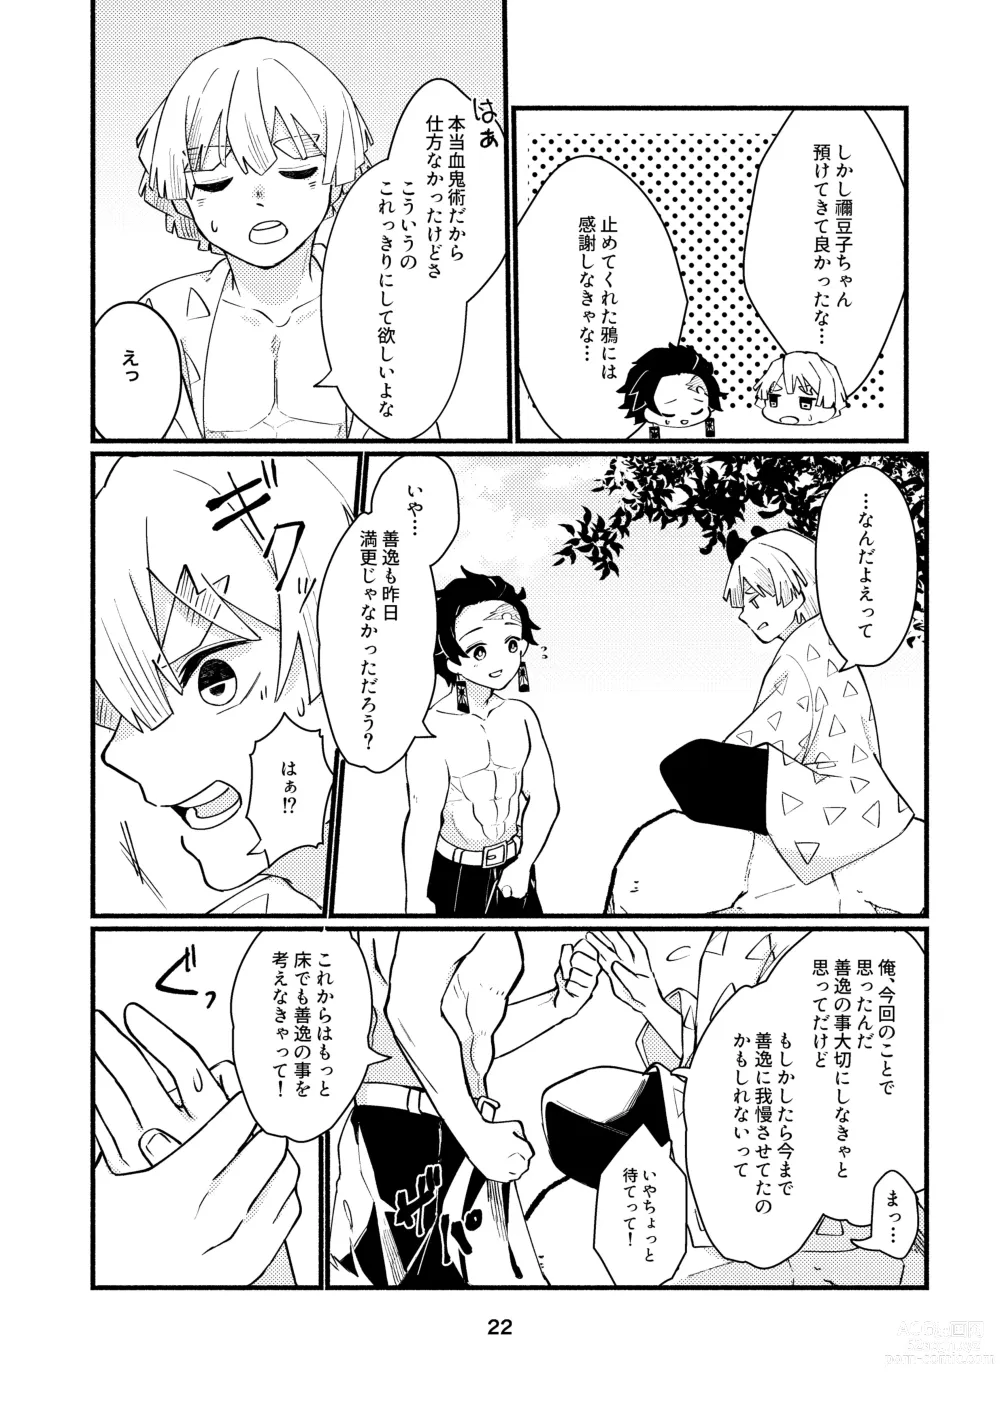 Page 21 of doujinshi Dakara Mou Muri  datte!!